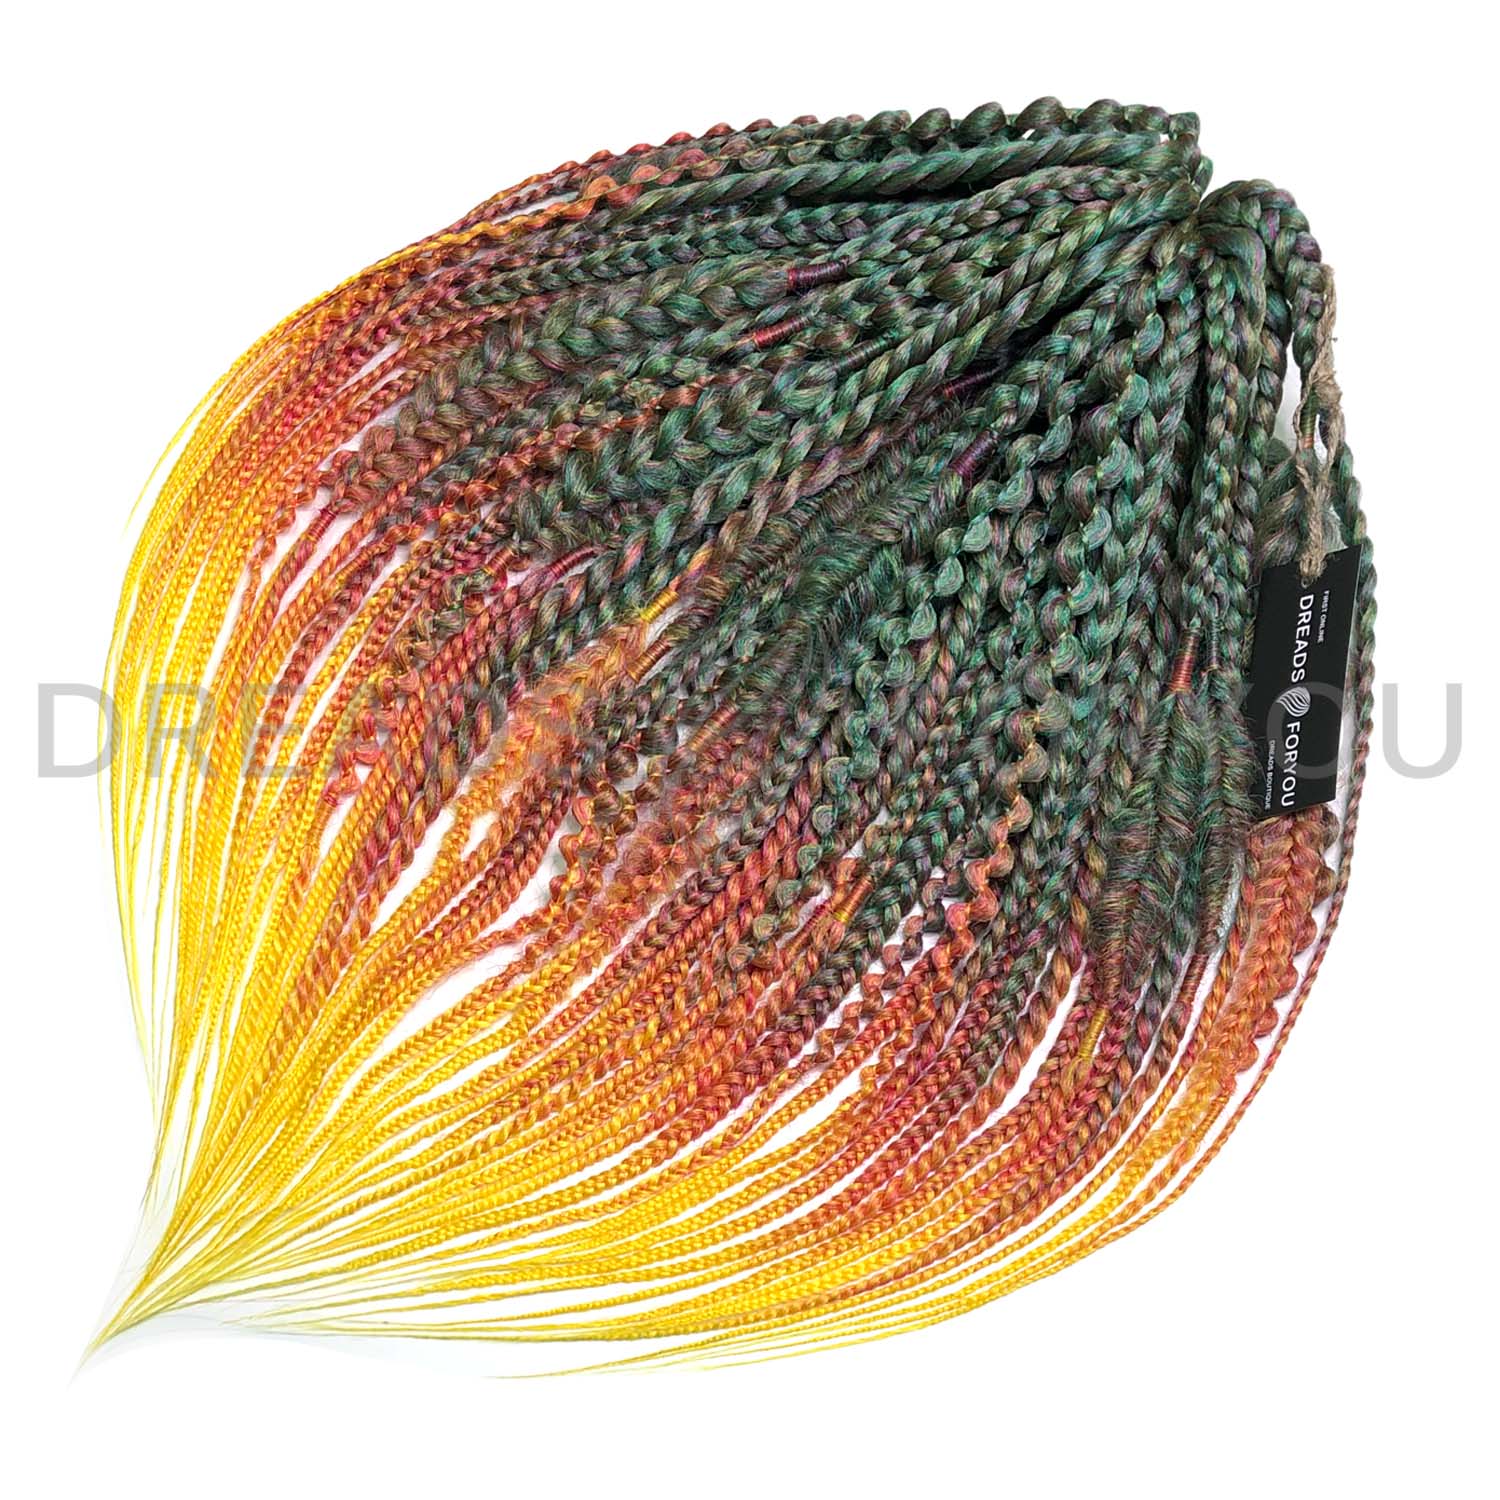 DE Textured braids D-GREEN HOT PLUM YELLOW STOCK